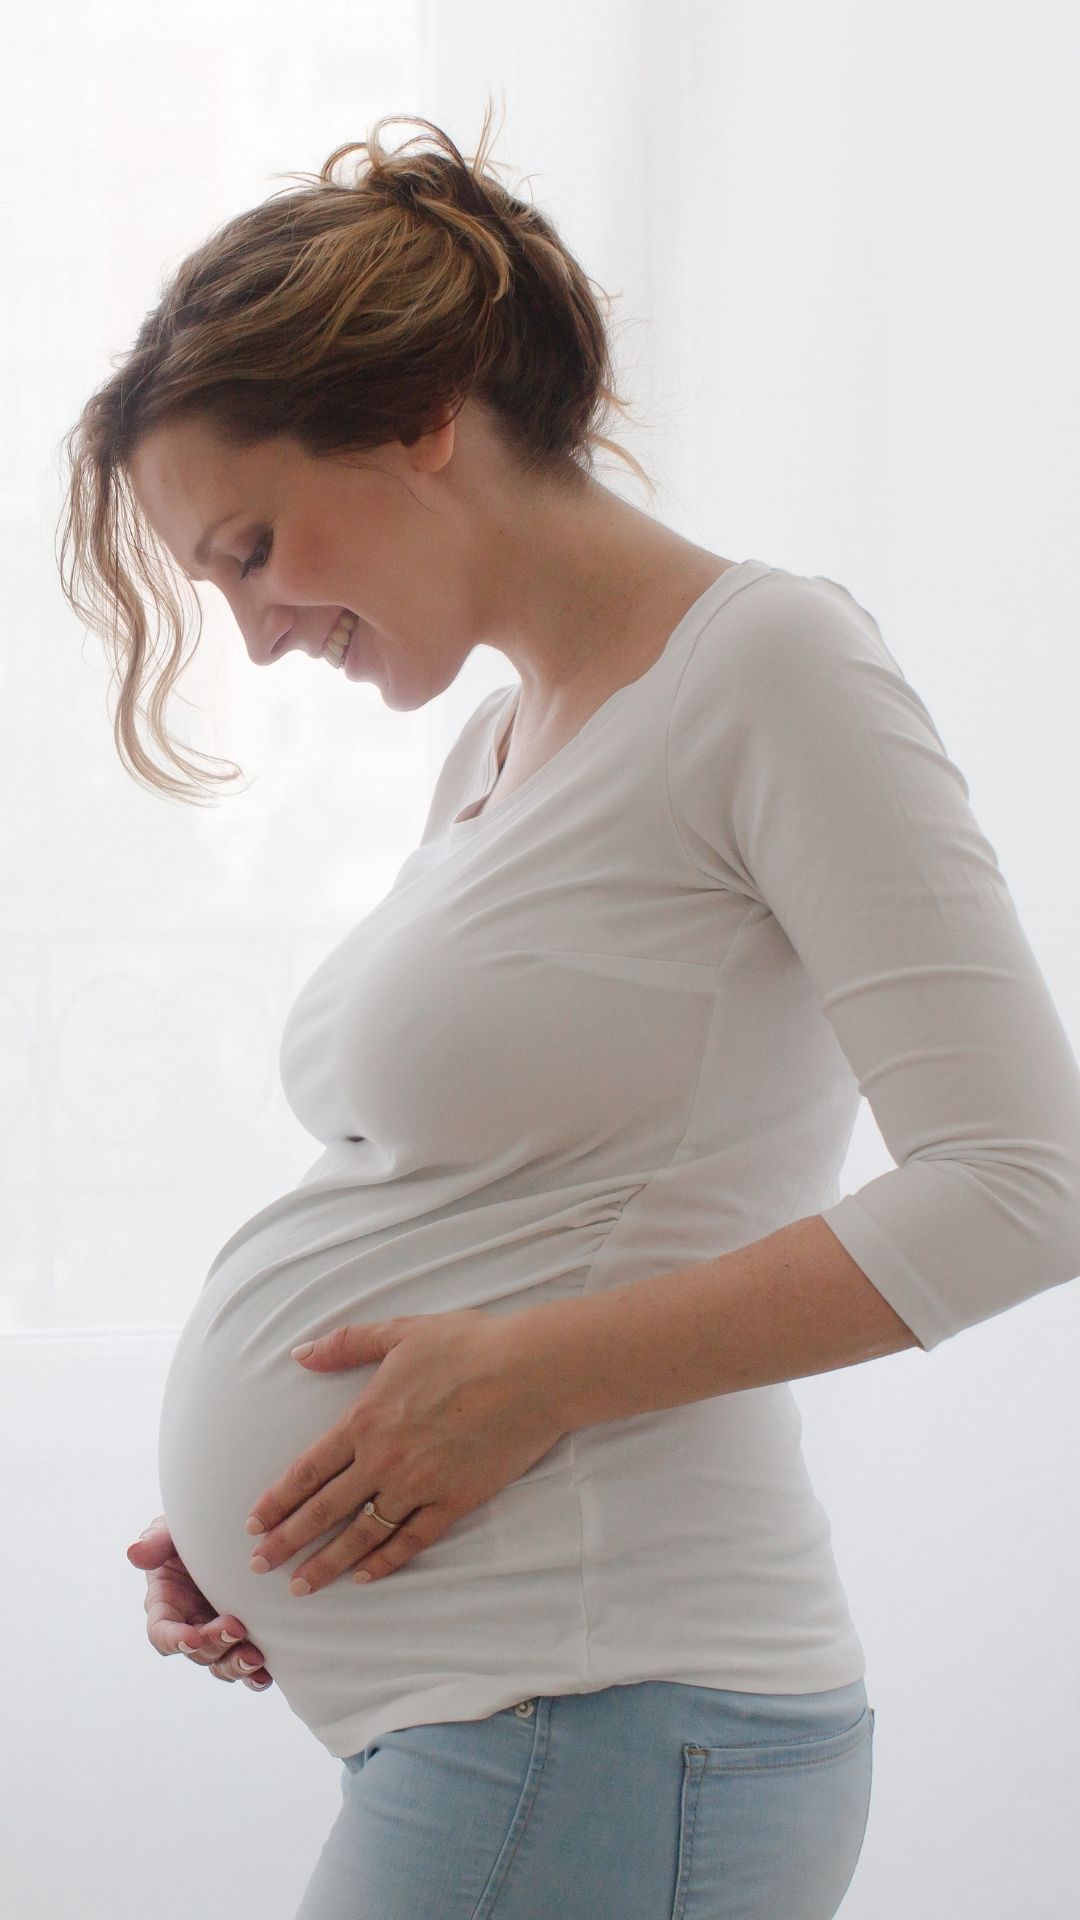 Διατροφή κατά την εγκυμοσύνη και το θηλασμό